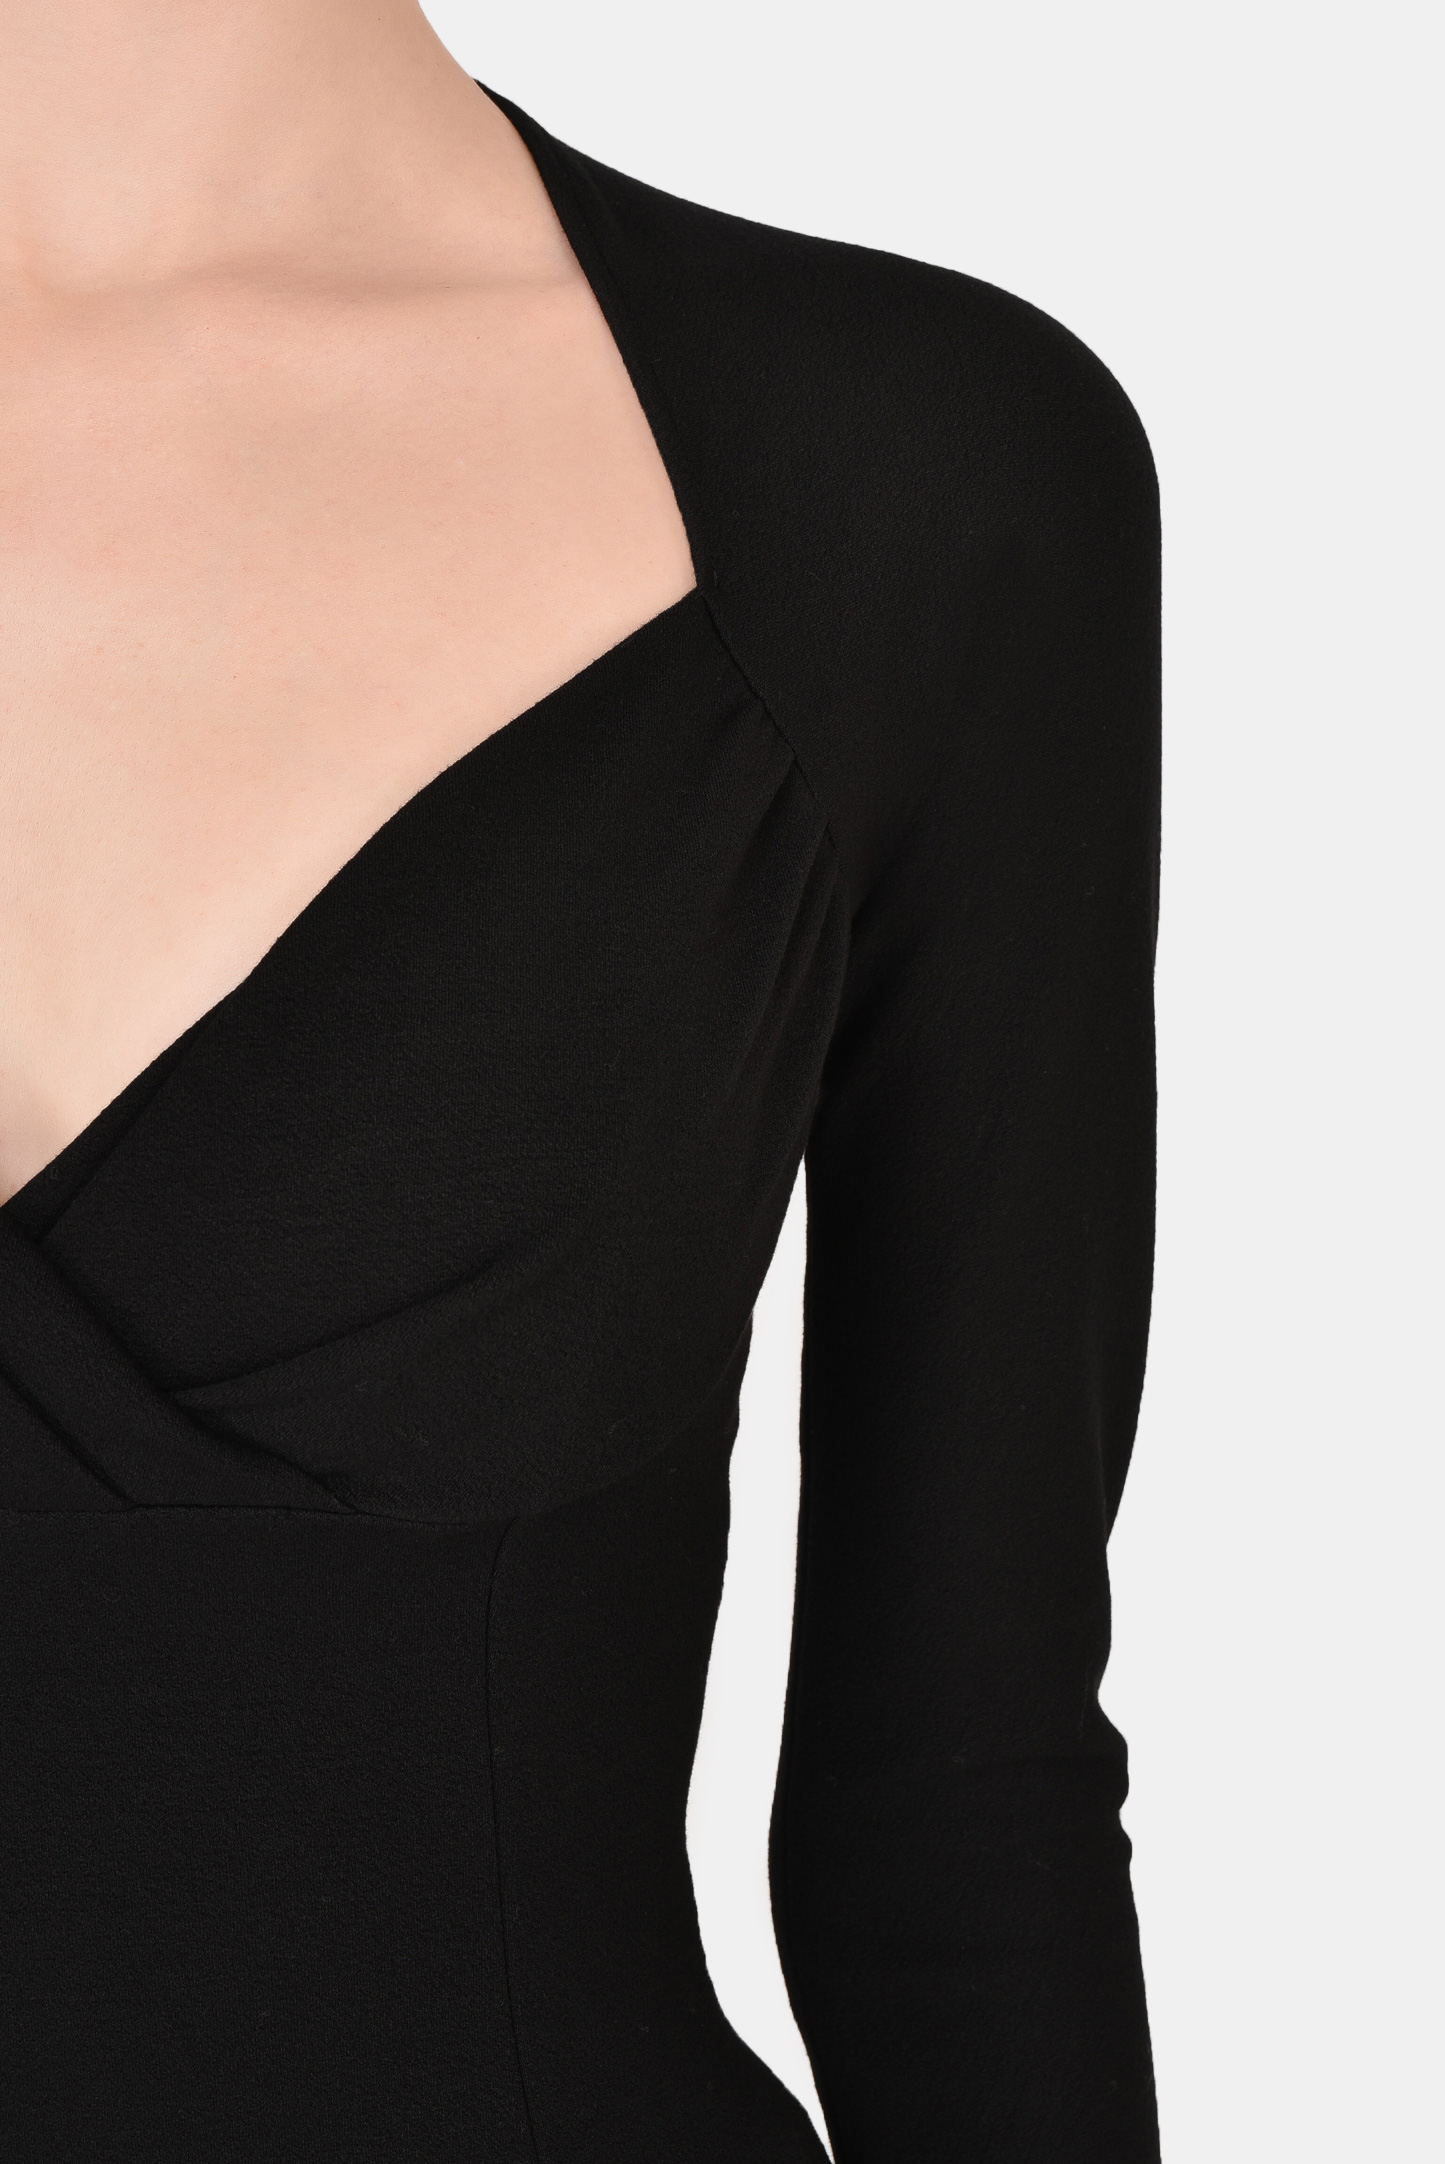 Платье DOLCE & GABBANA F6R0VT FUGDU, цвет: Черный, Женский